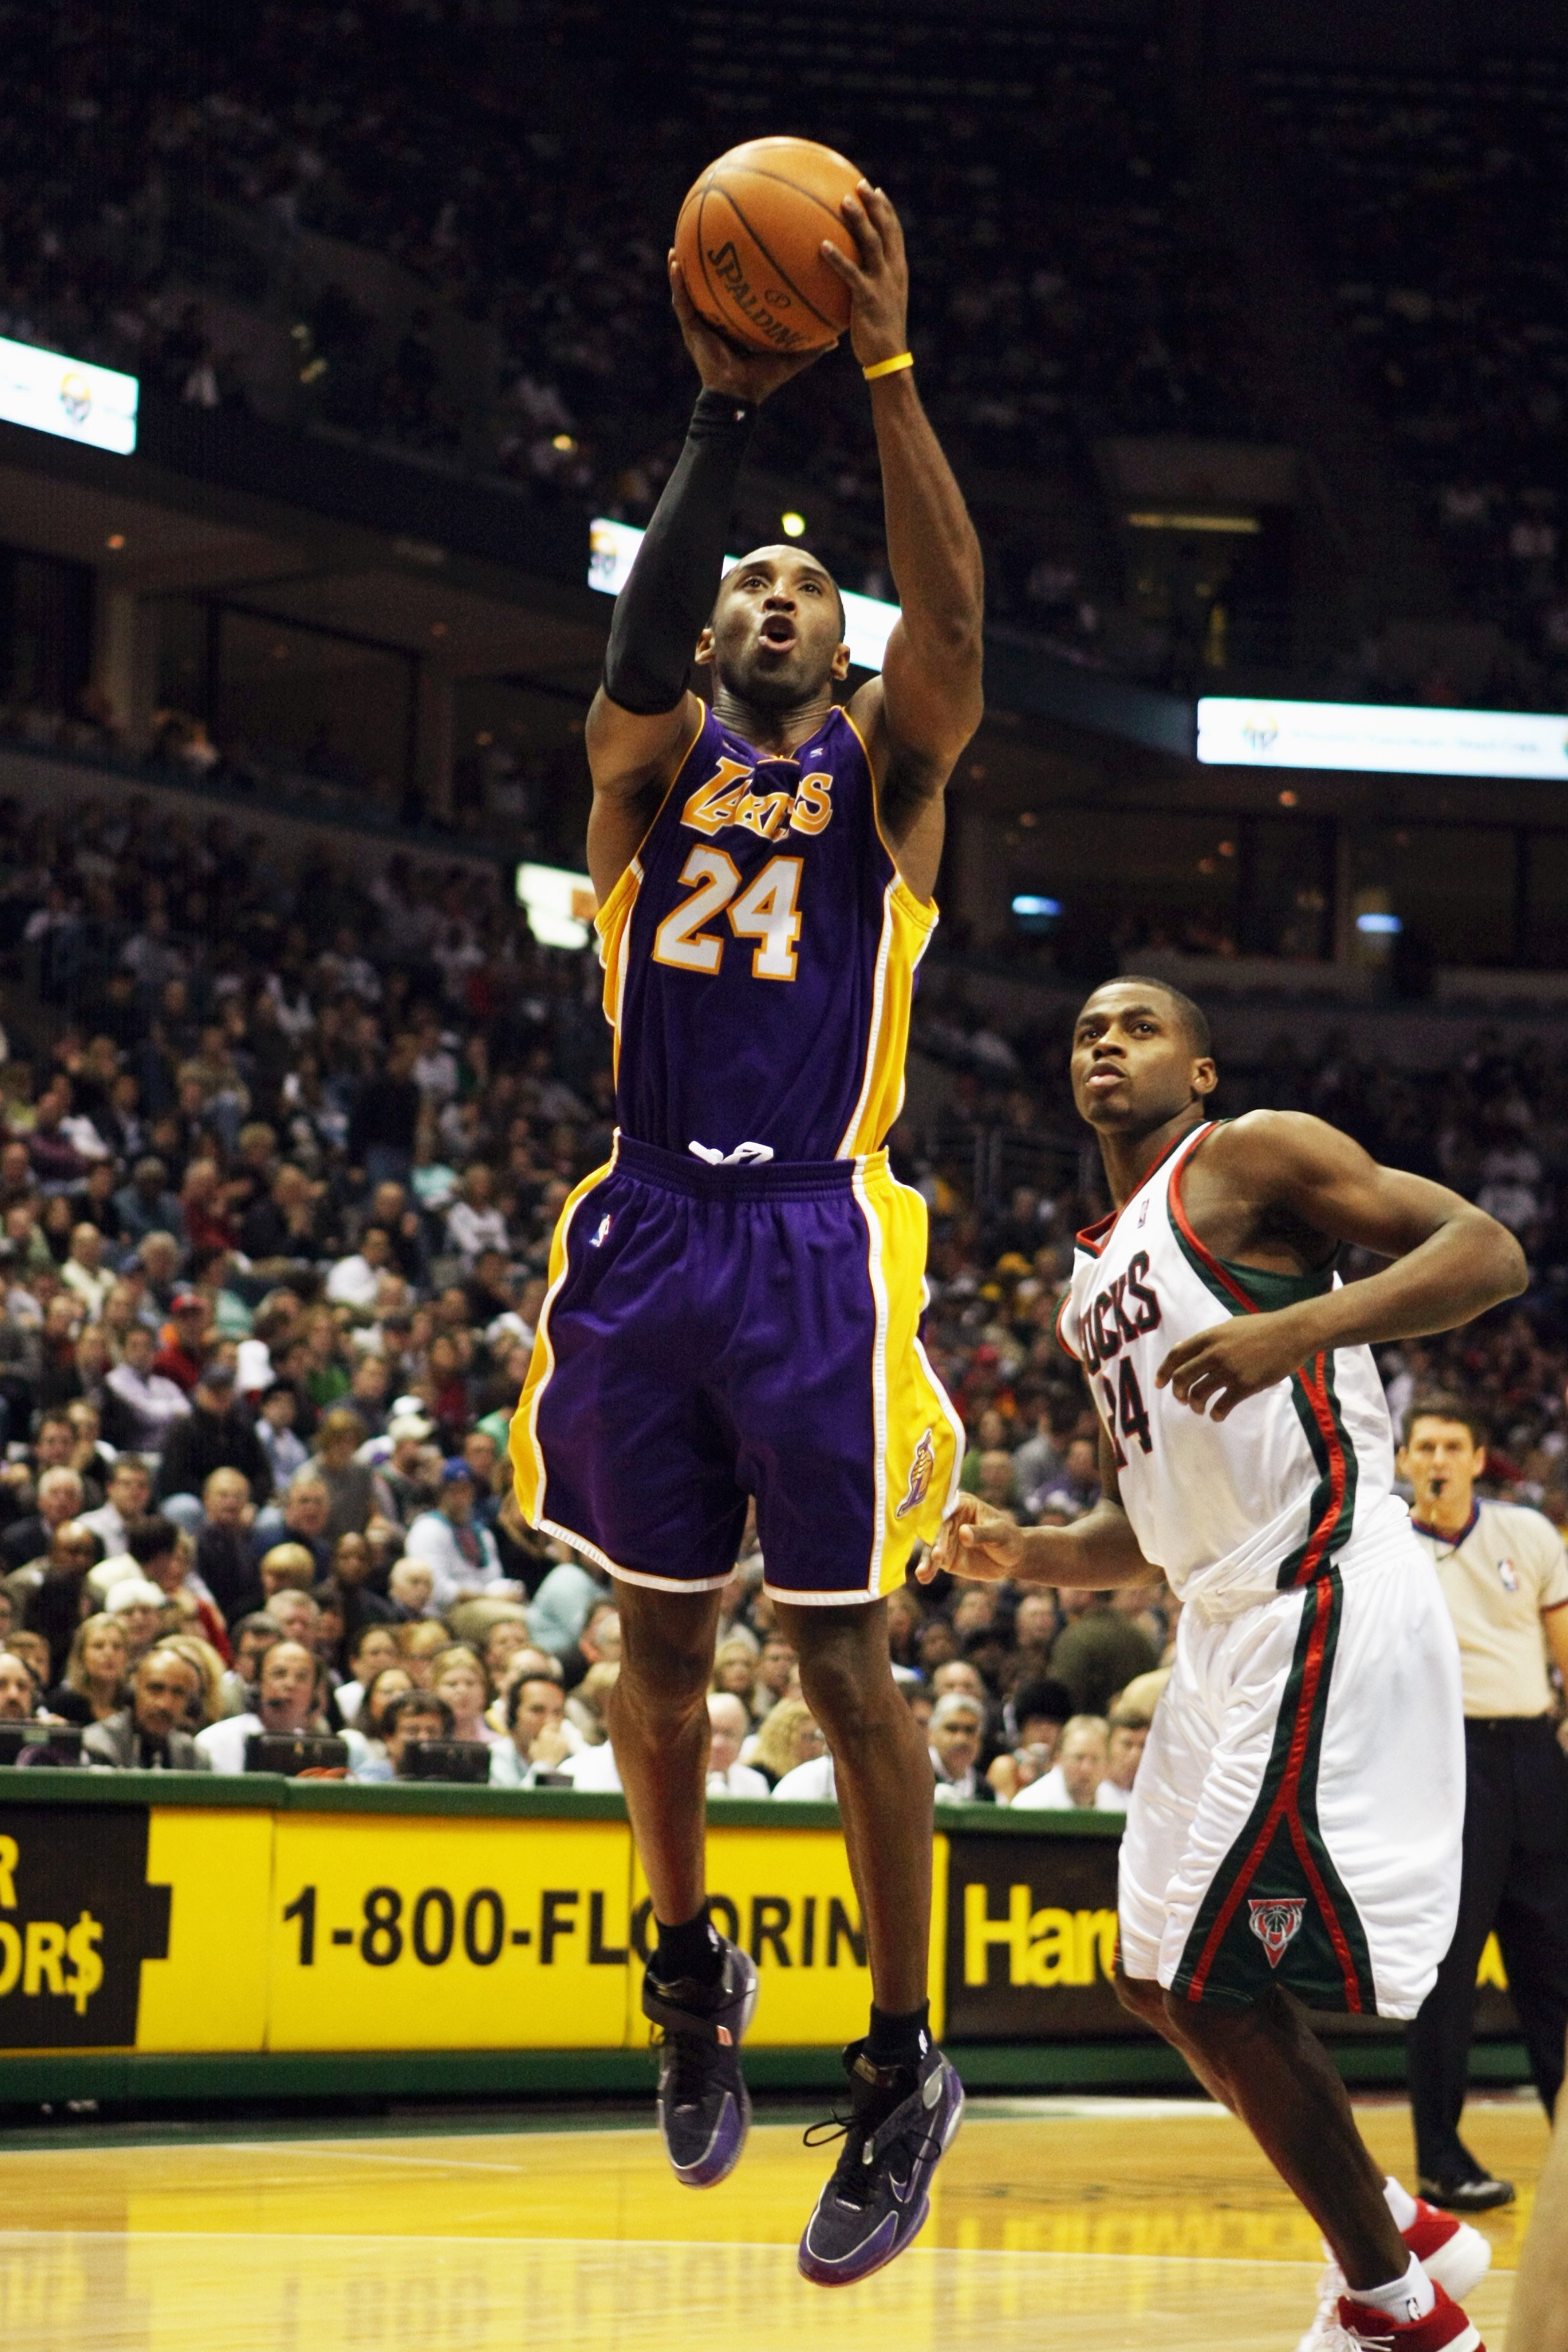 Ballislife.com on X: Kobe Bryant's shooting during the 2004 NBA Finals.  GM1: 10-27 FG, 1-6 3PT GM2: 14-27 FG, 1-5 3PT GM3: 4-13 FG, 0-3 3PT GM4:  8-25 FG, 2-6 3PT GM5: 7-21 FG, 0-2 3PT  / X